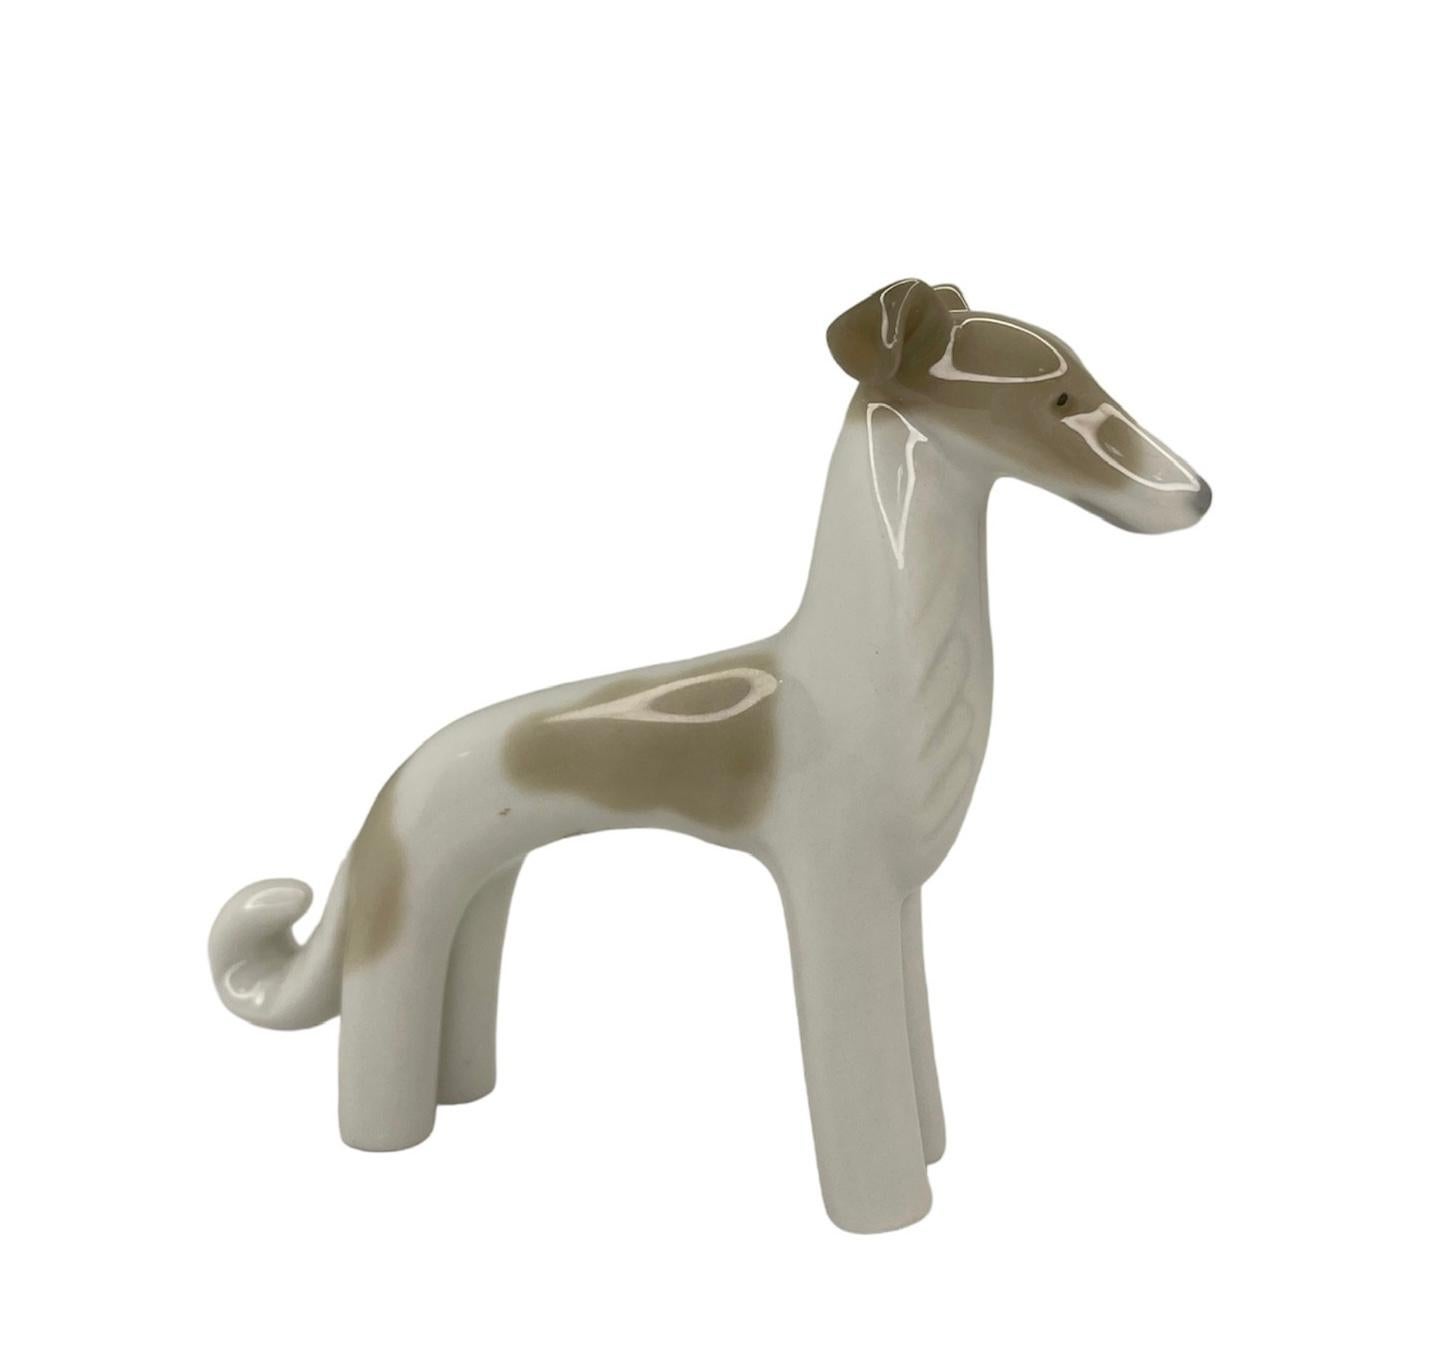 Il s'agit d'une mini figurine de chien en porcelaine de Lladro. Il représente un chien brun et blanc peint à la main, debout et très contemplatif. Le poinçon de Lladro Naos se trouve sous la figurine.